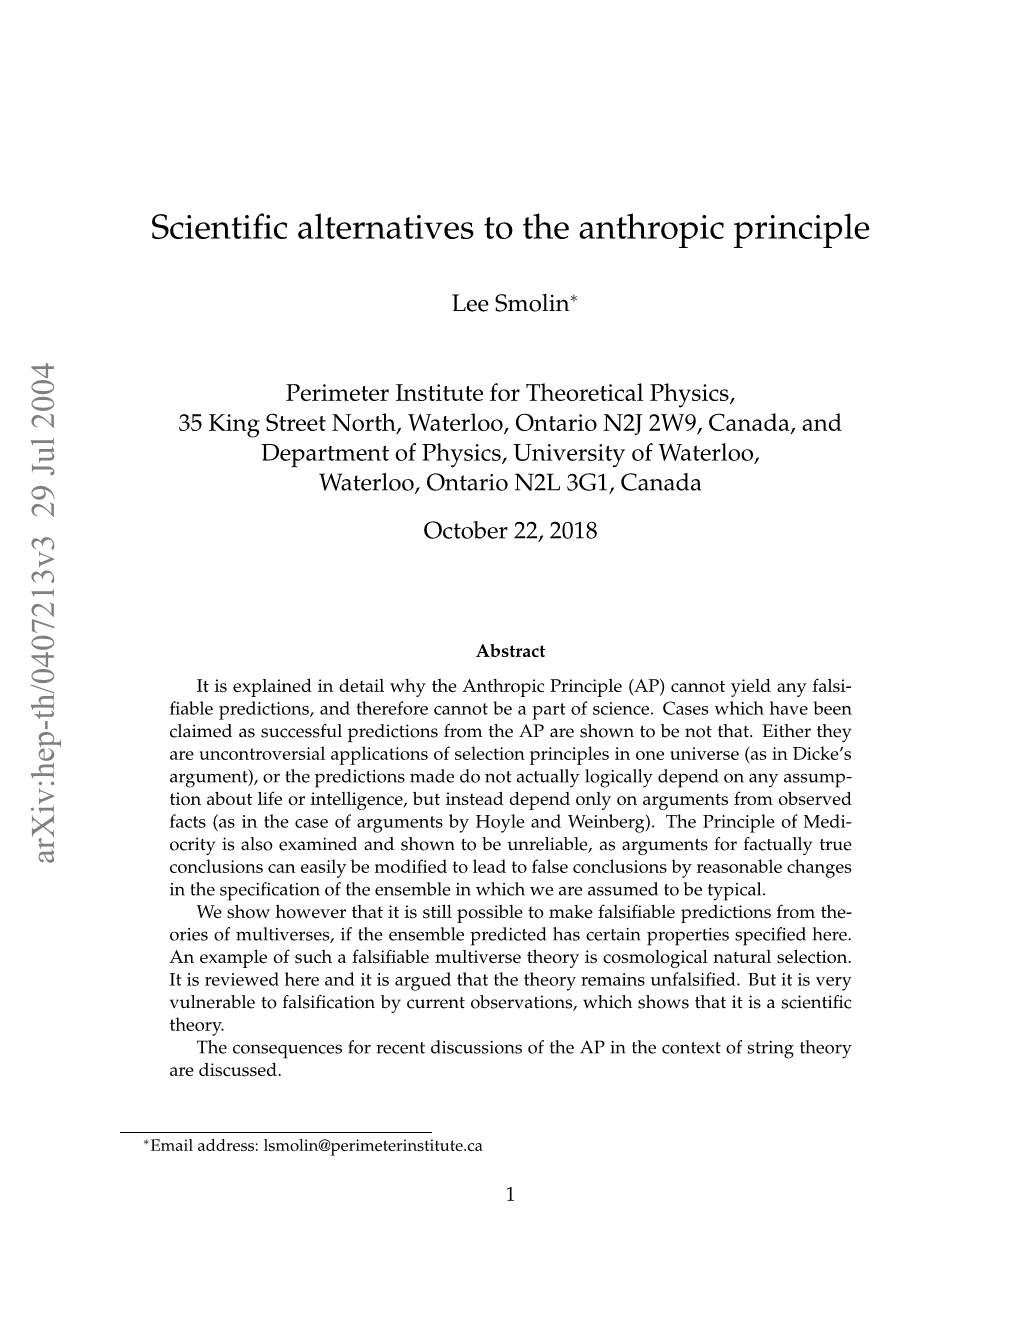 Scientific Alternatives to the Anthropic Principle